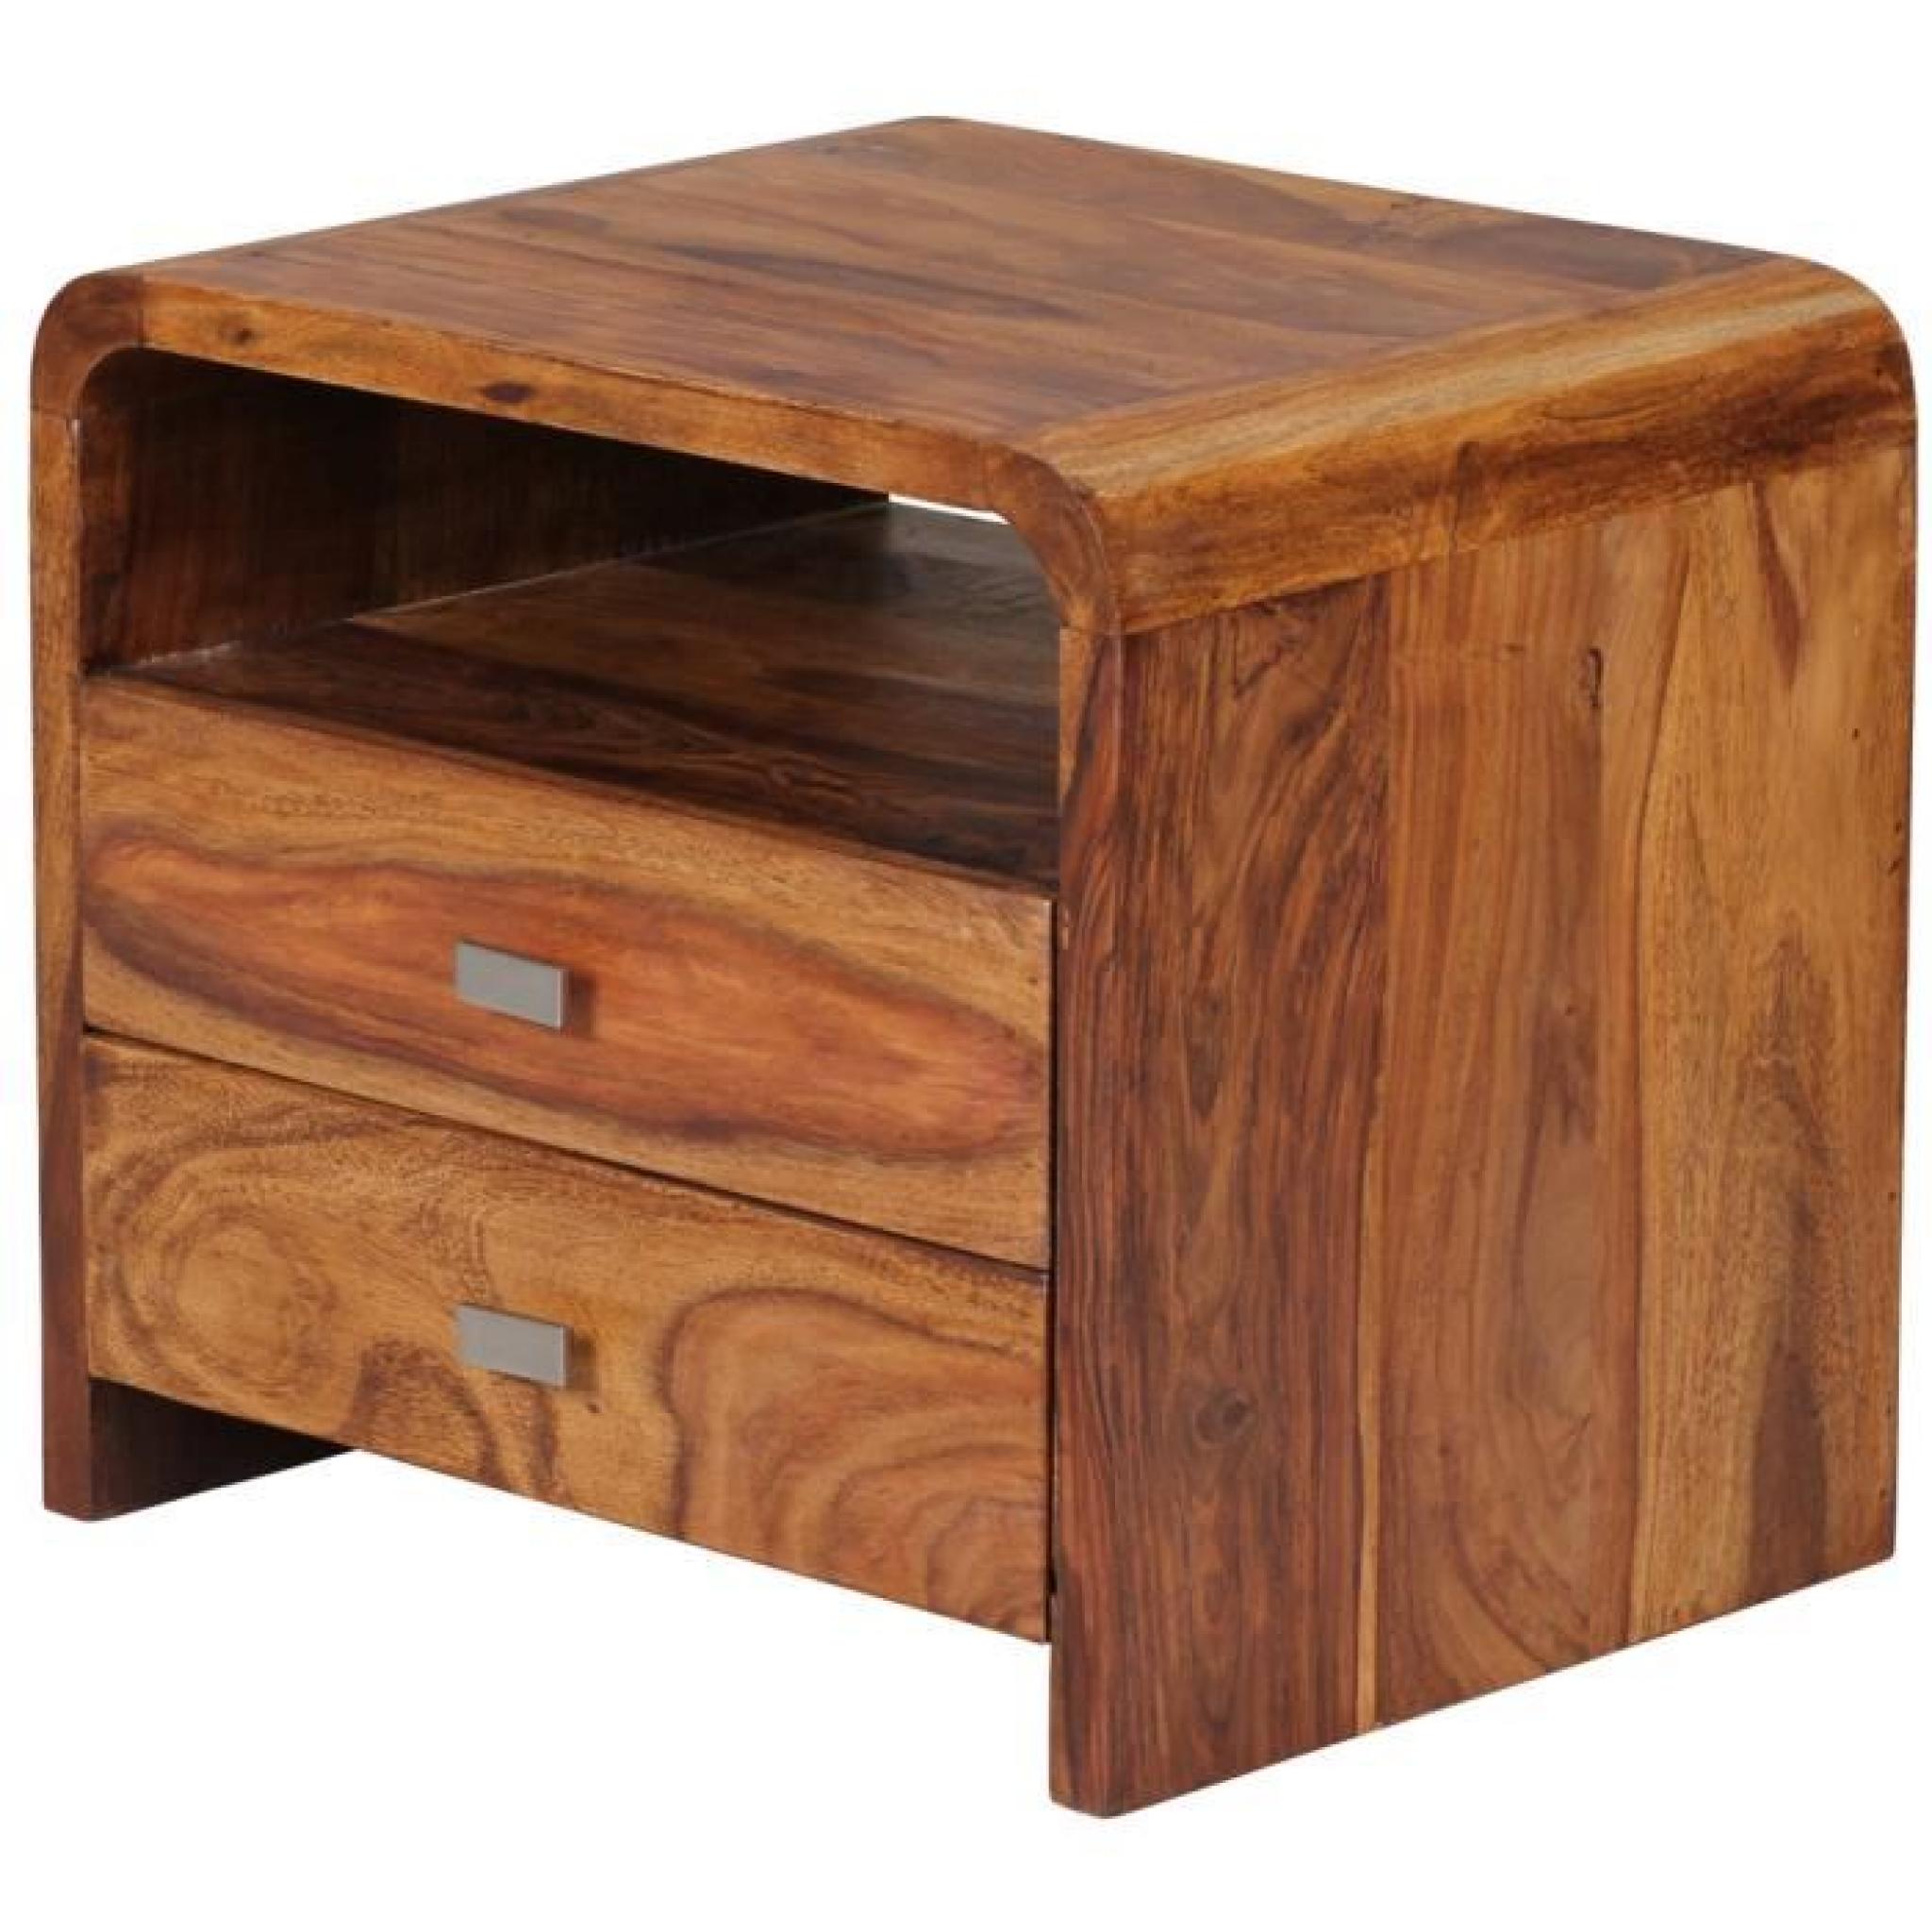 Table de chevet en bois massif de palissandre avec tiroir, H 45 x L 45 x P 30 cm pas cher